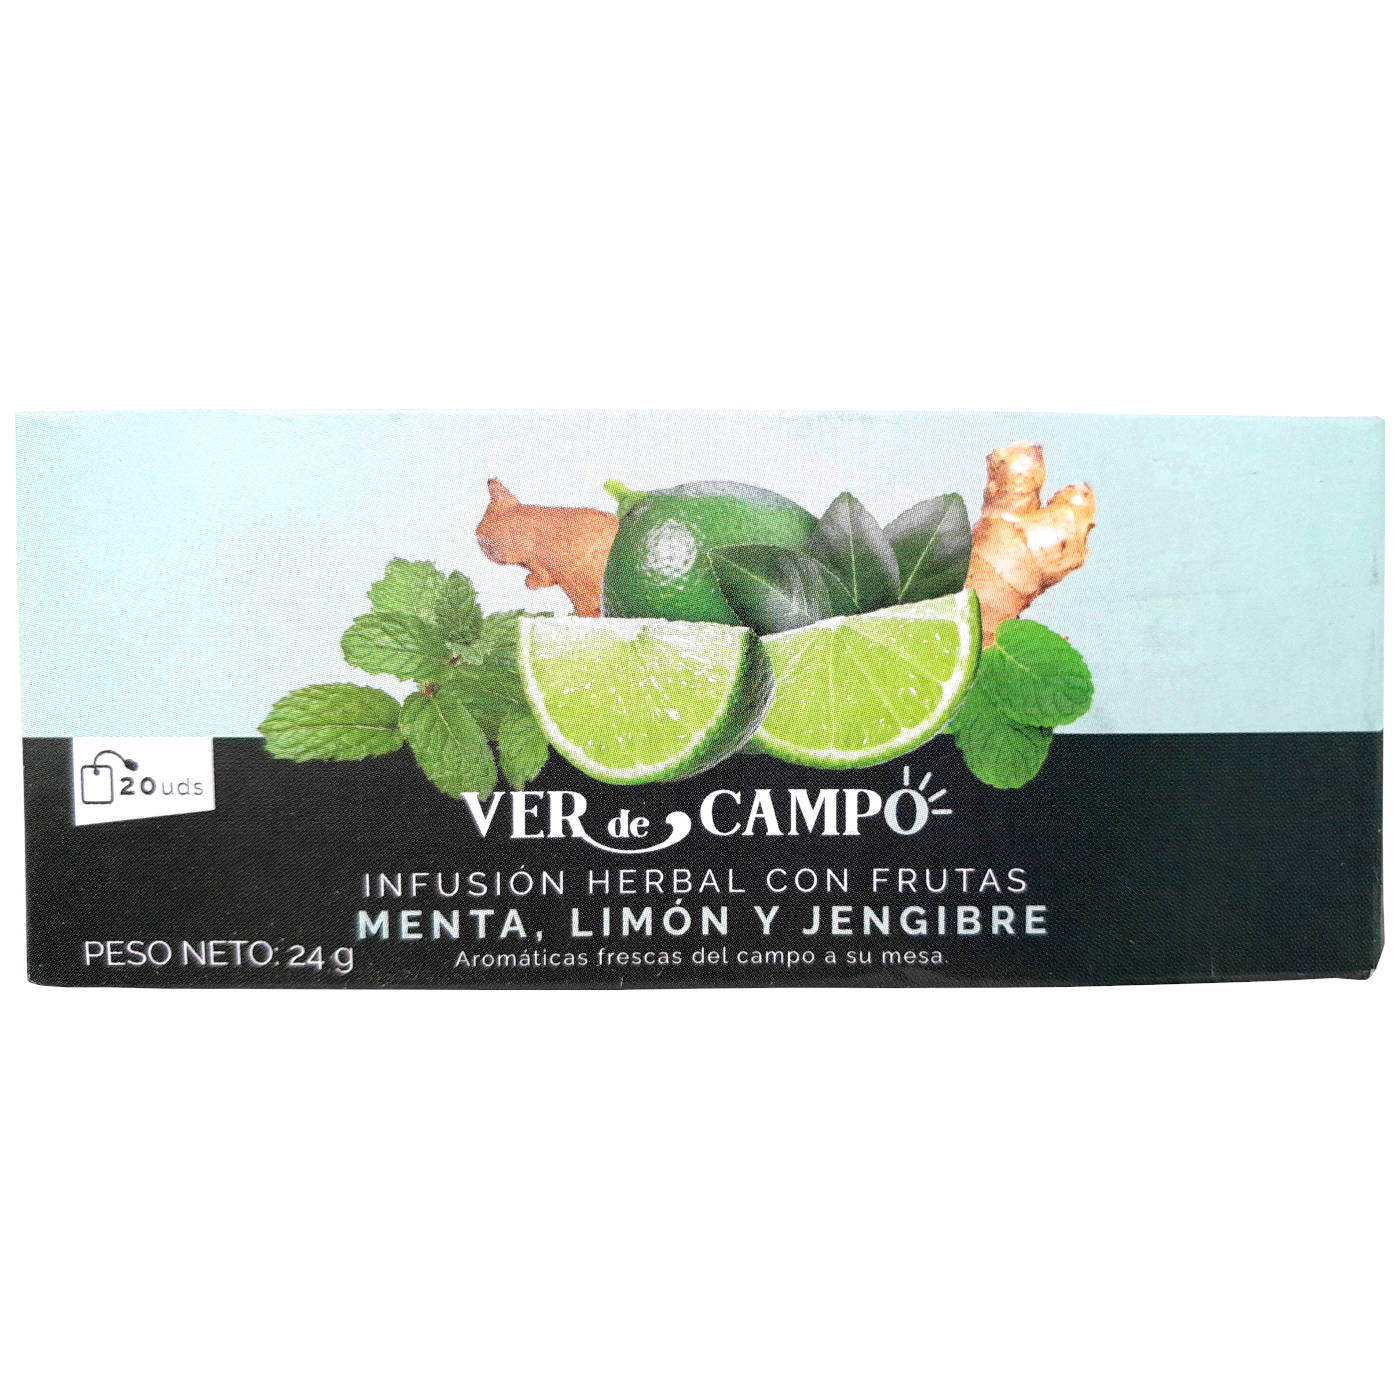 infusion-herbal-menta-limon-jengibre-plaza-vegana-1400px